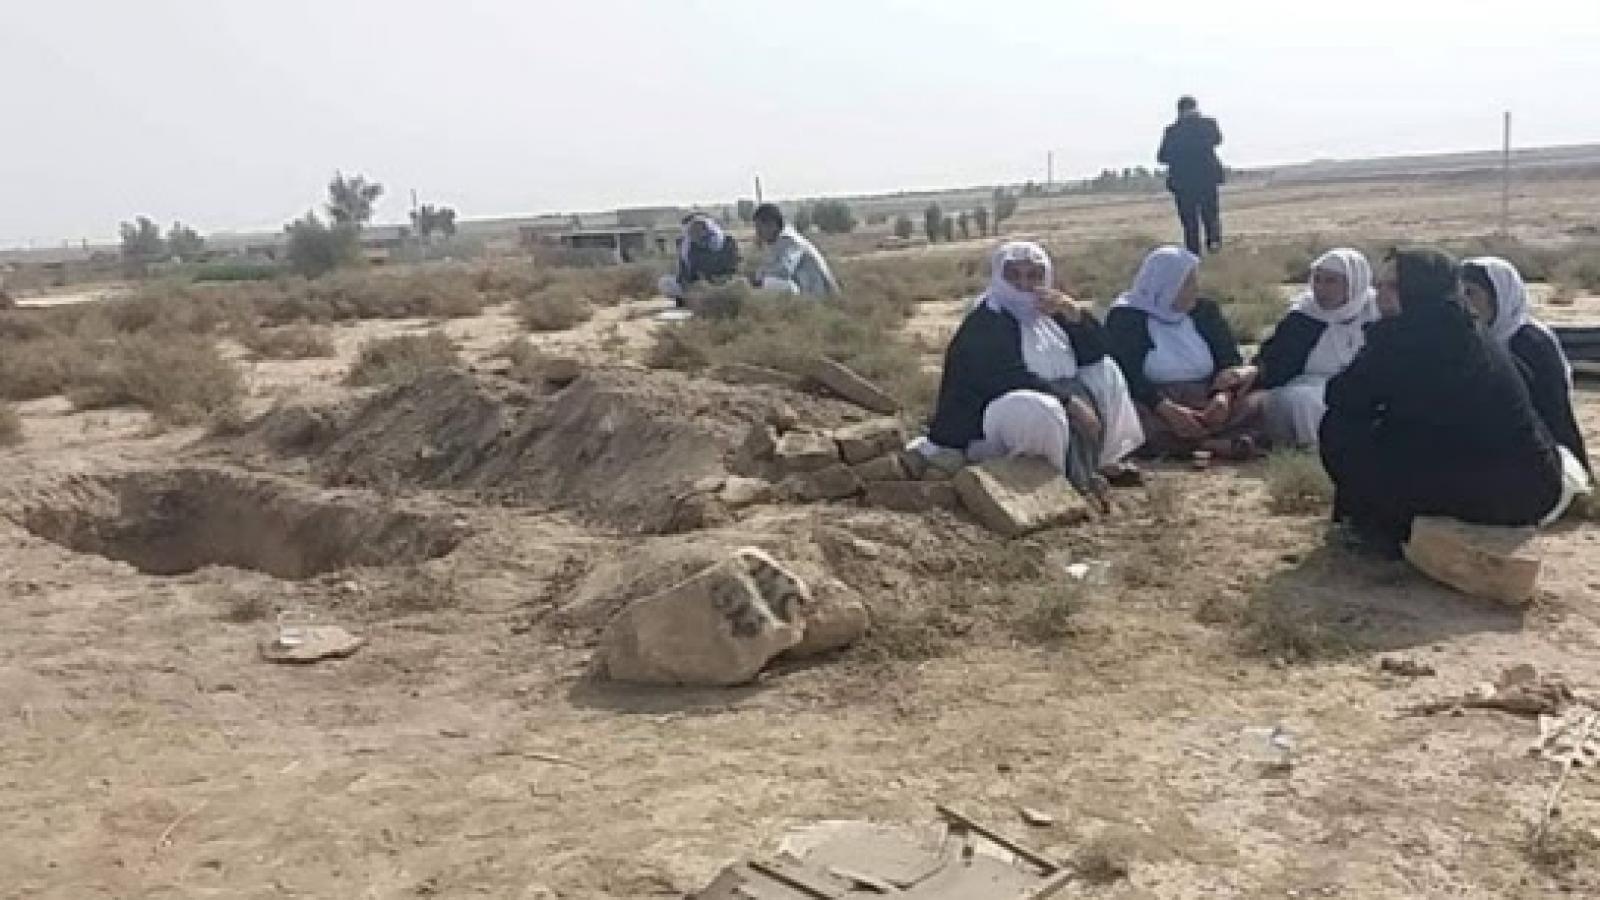 تم العثور على مقبرة جماعية في قرية قصر المحراب ، العراق هويتنا ، 21 تشرين الثاني 2018